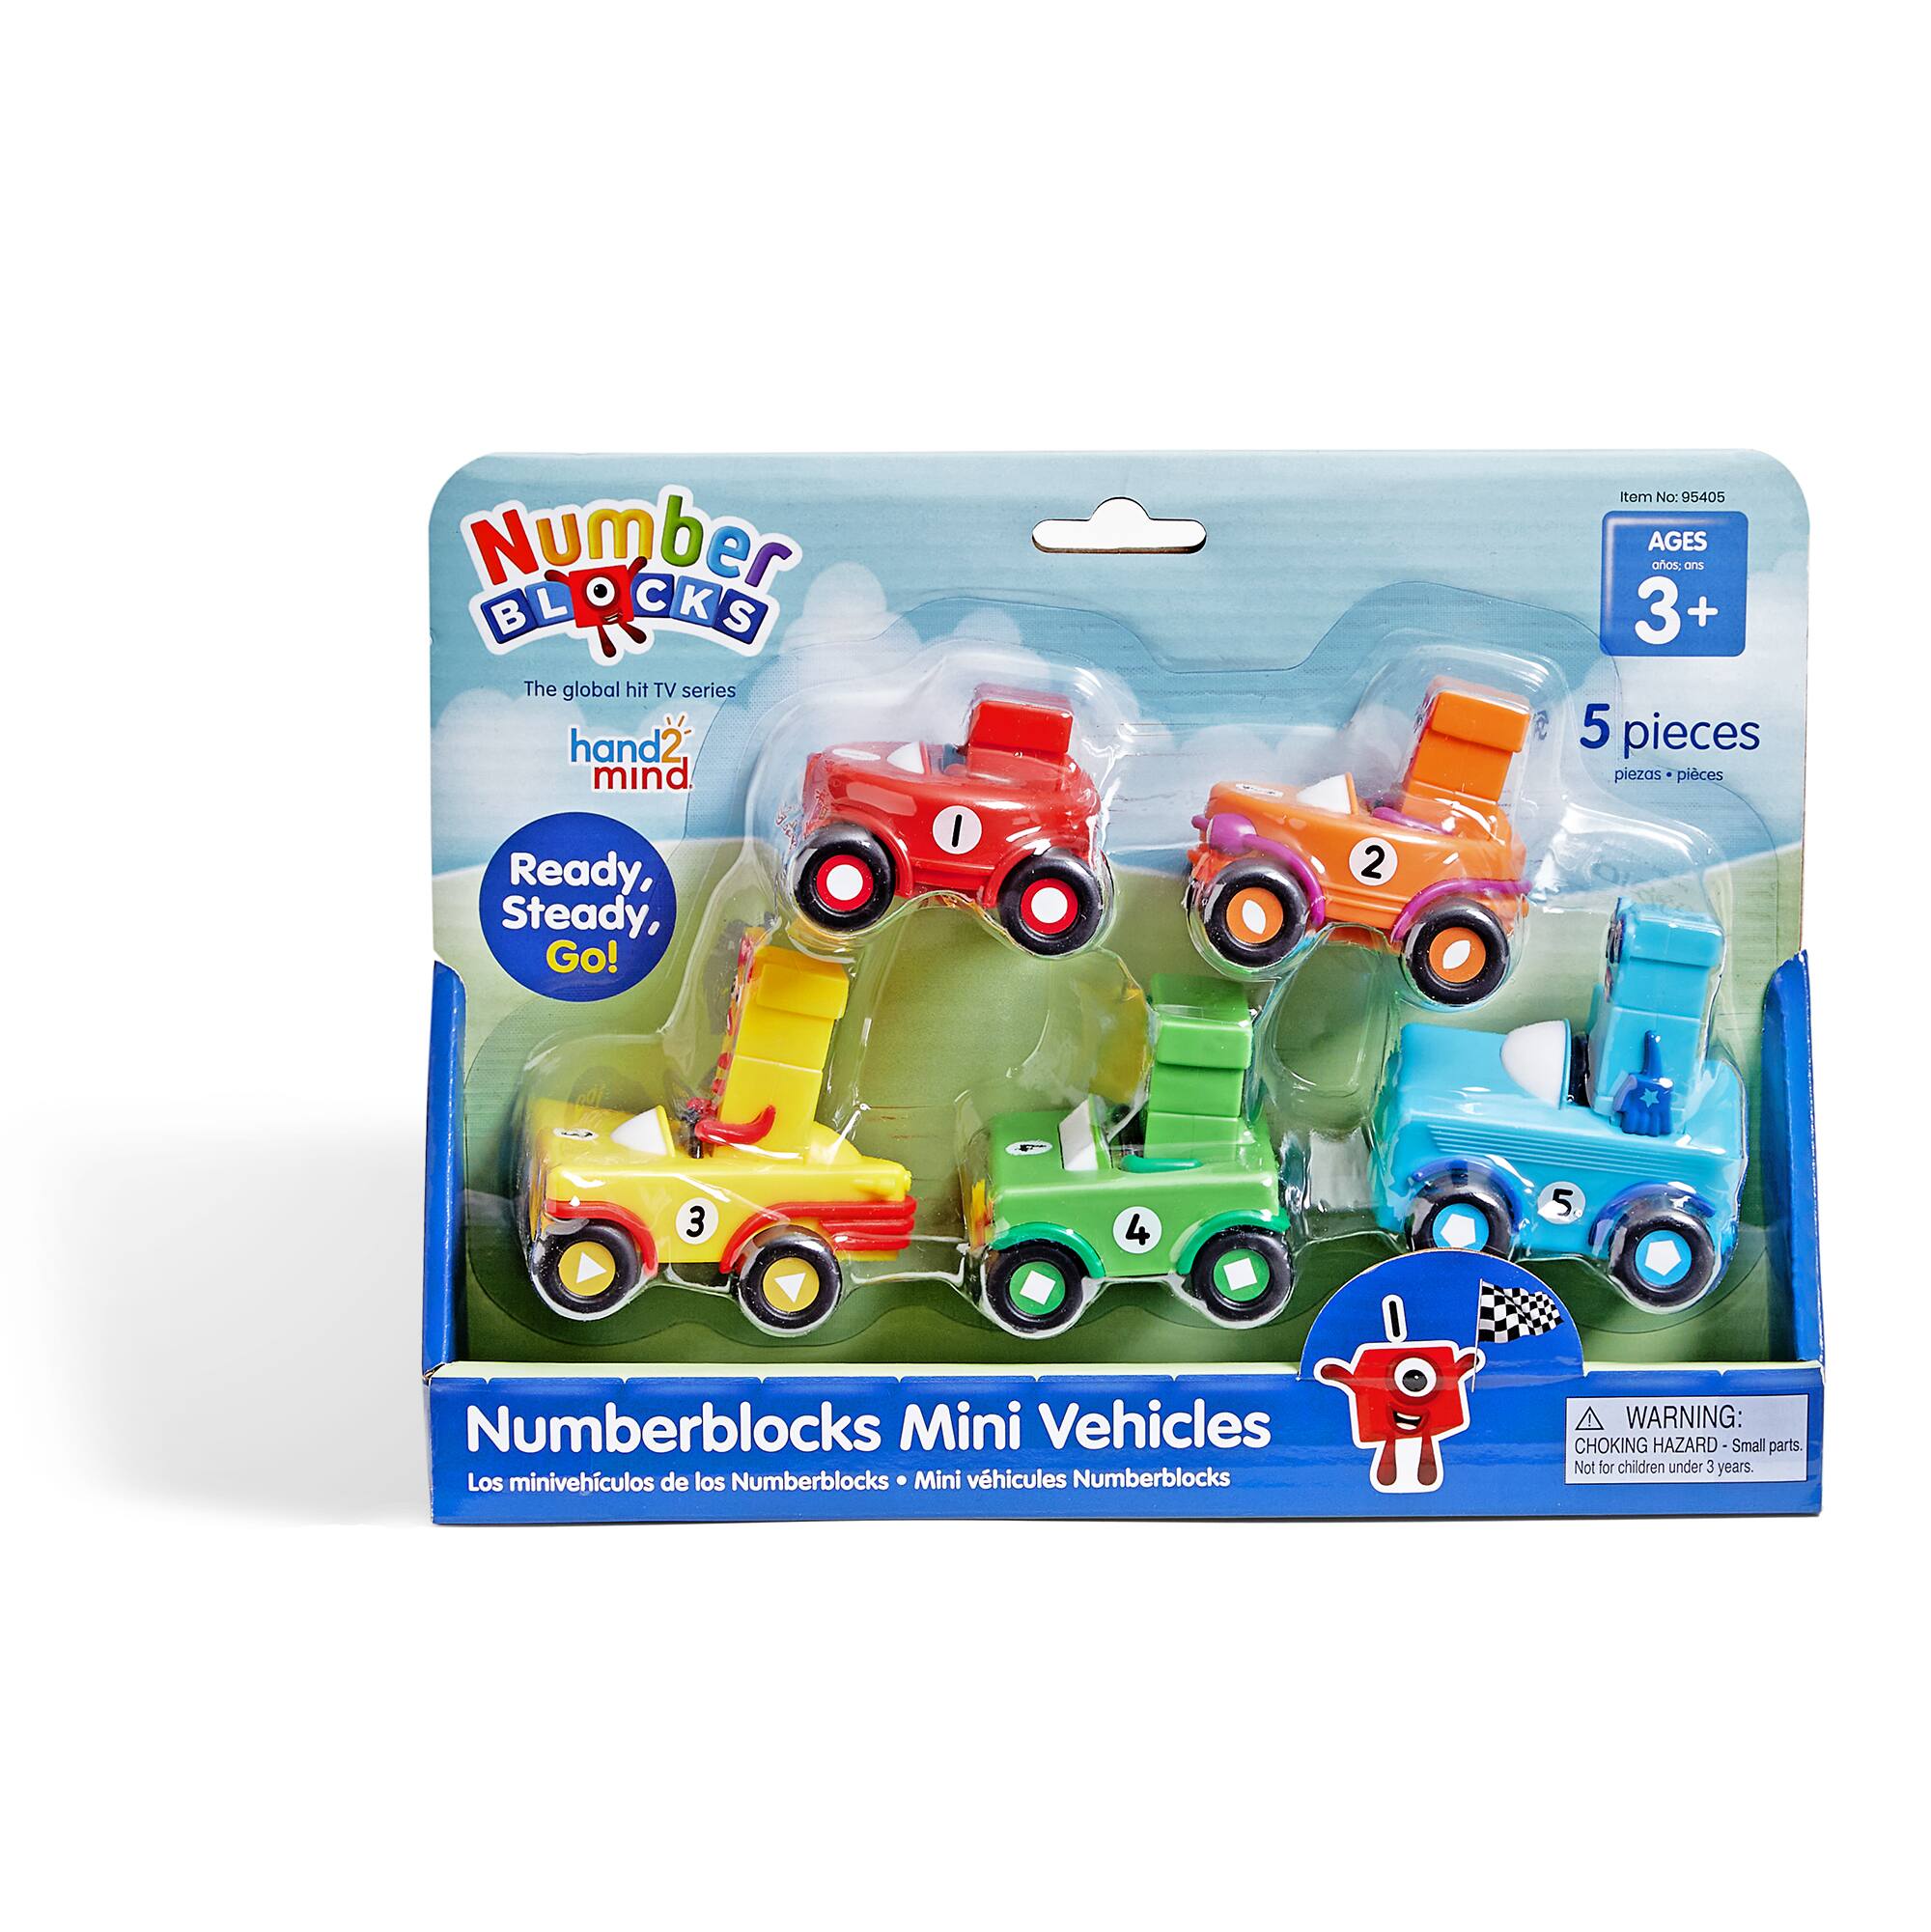 hand2mind Numberblocks&#xAE; Mini Vehicles Play Set